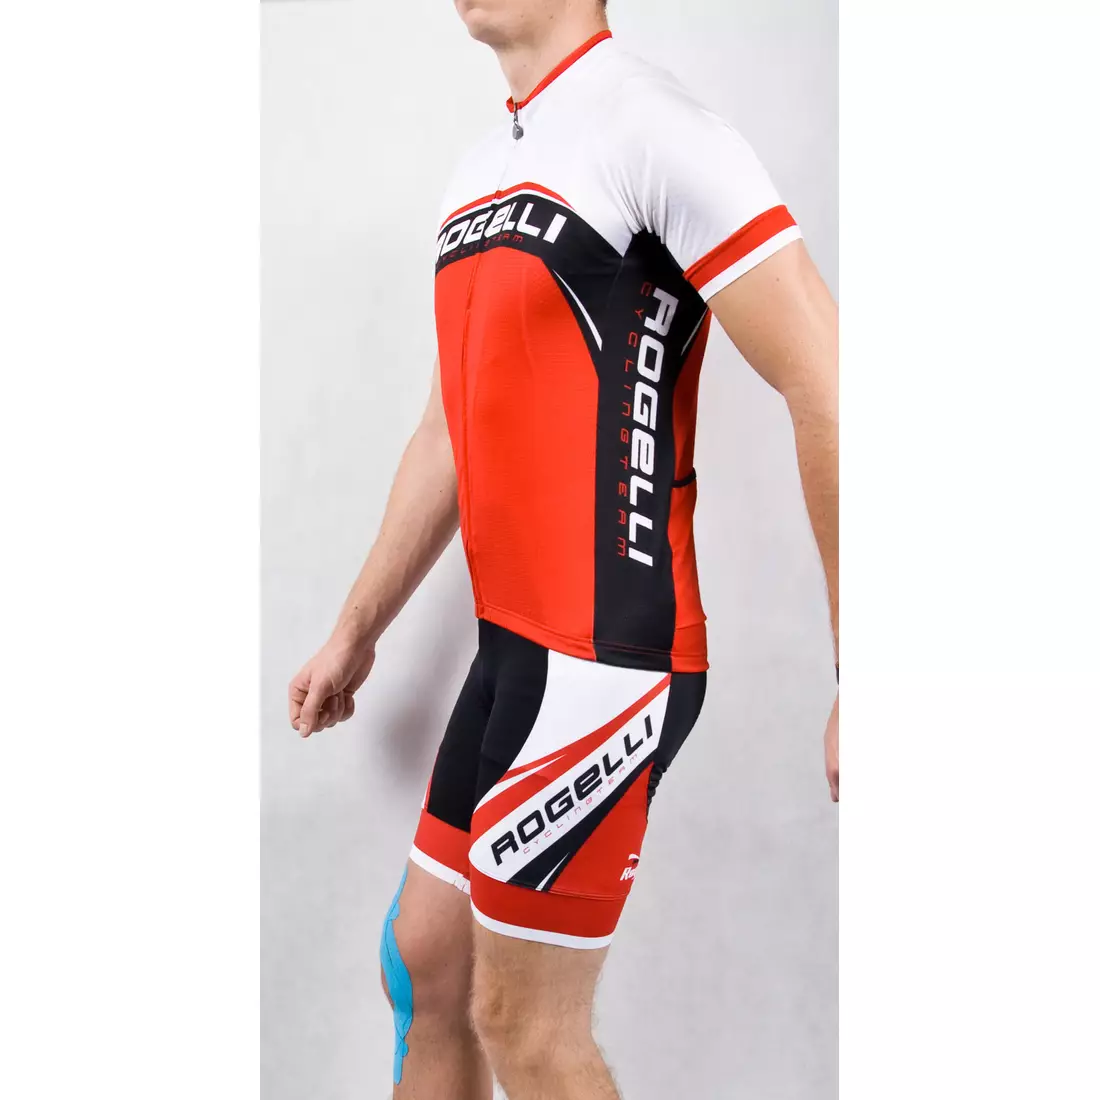 ROGELLI ANCONA - pánsky cyklistický dres, bielo-červený